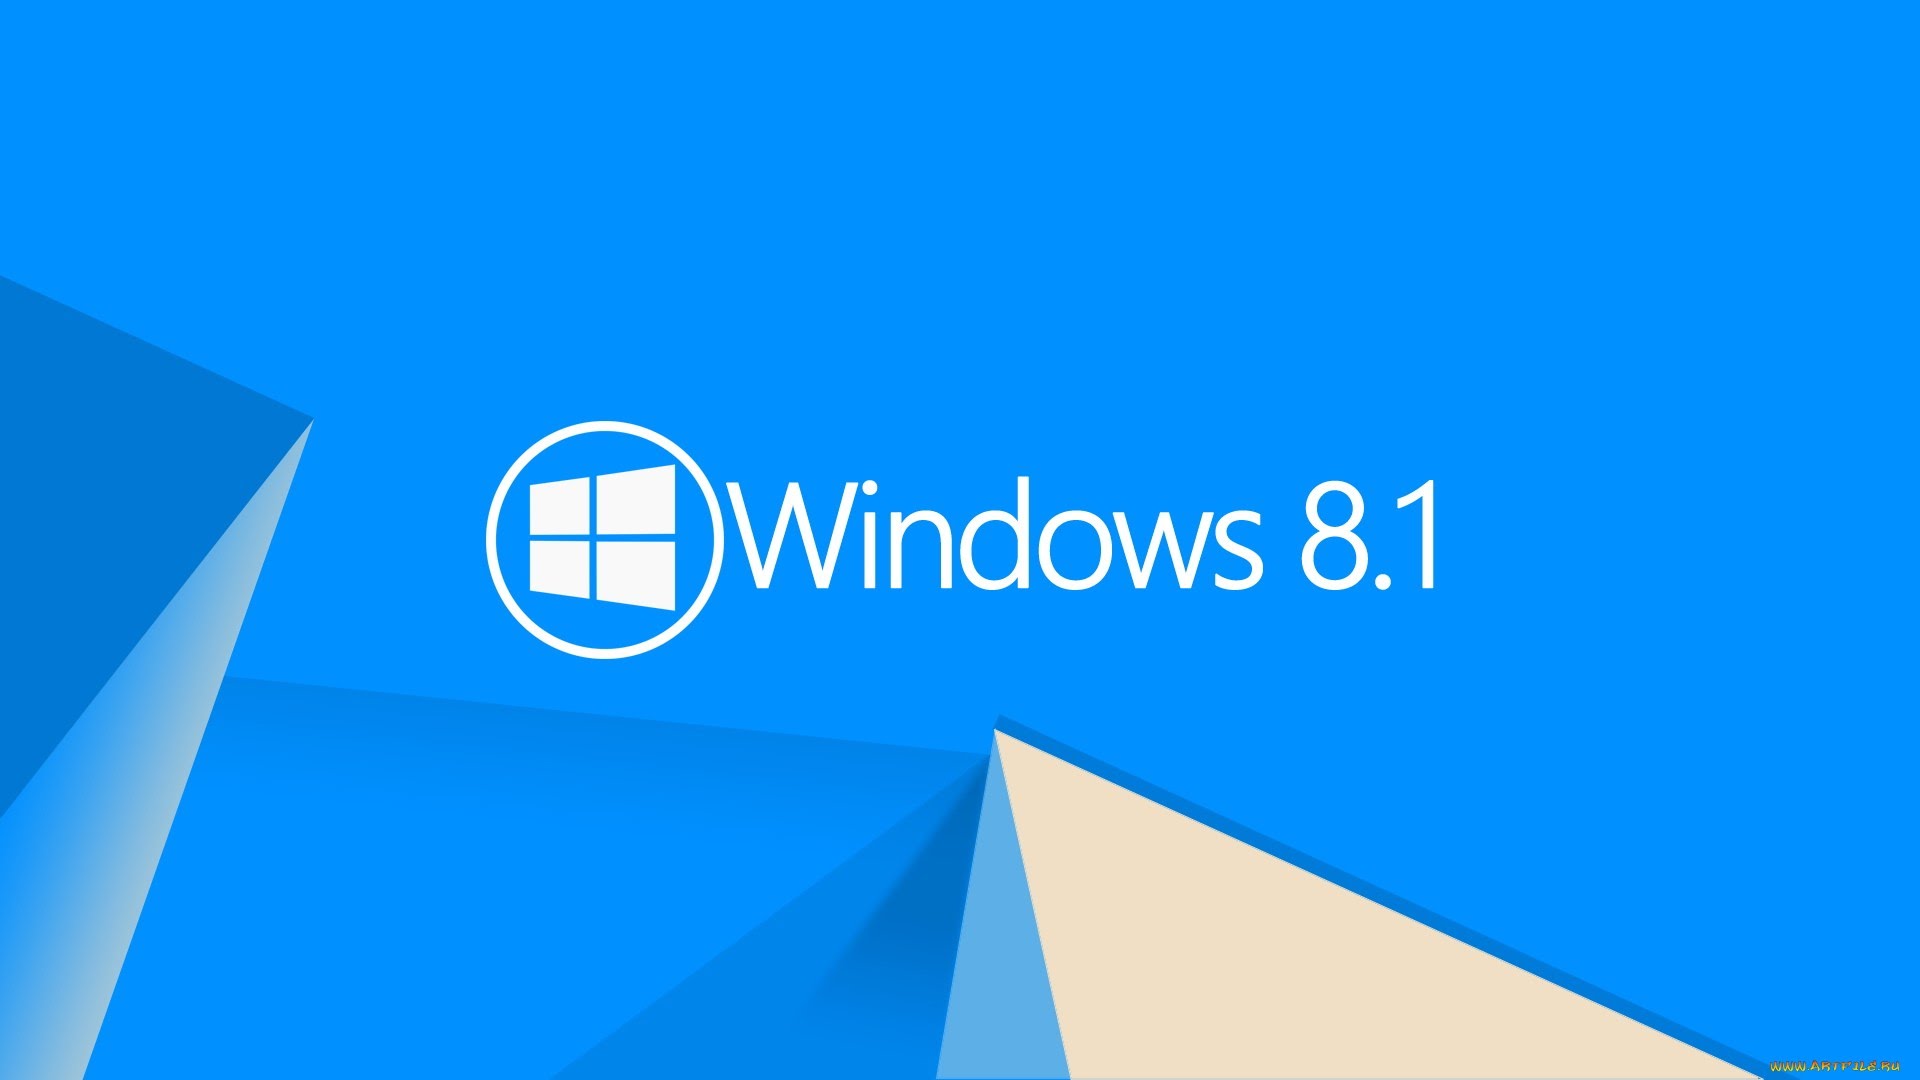 А какая Windows была первой у тебя? День рождения Windows 3.0 - 16